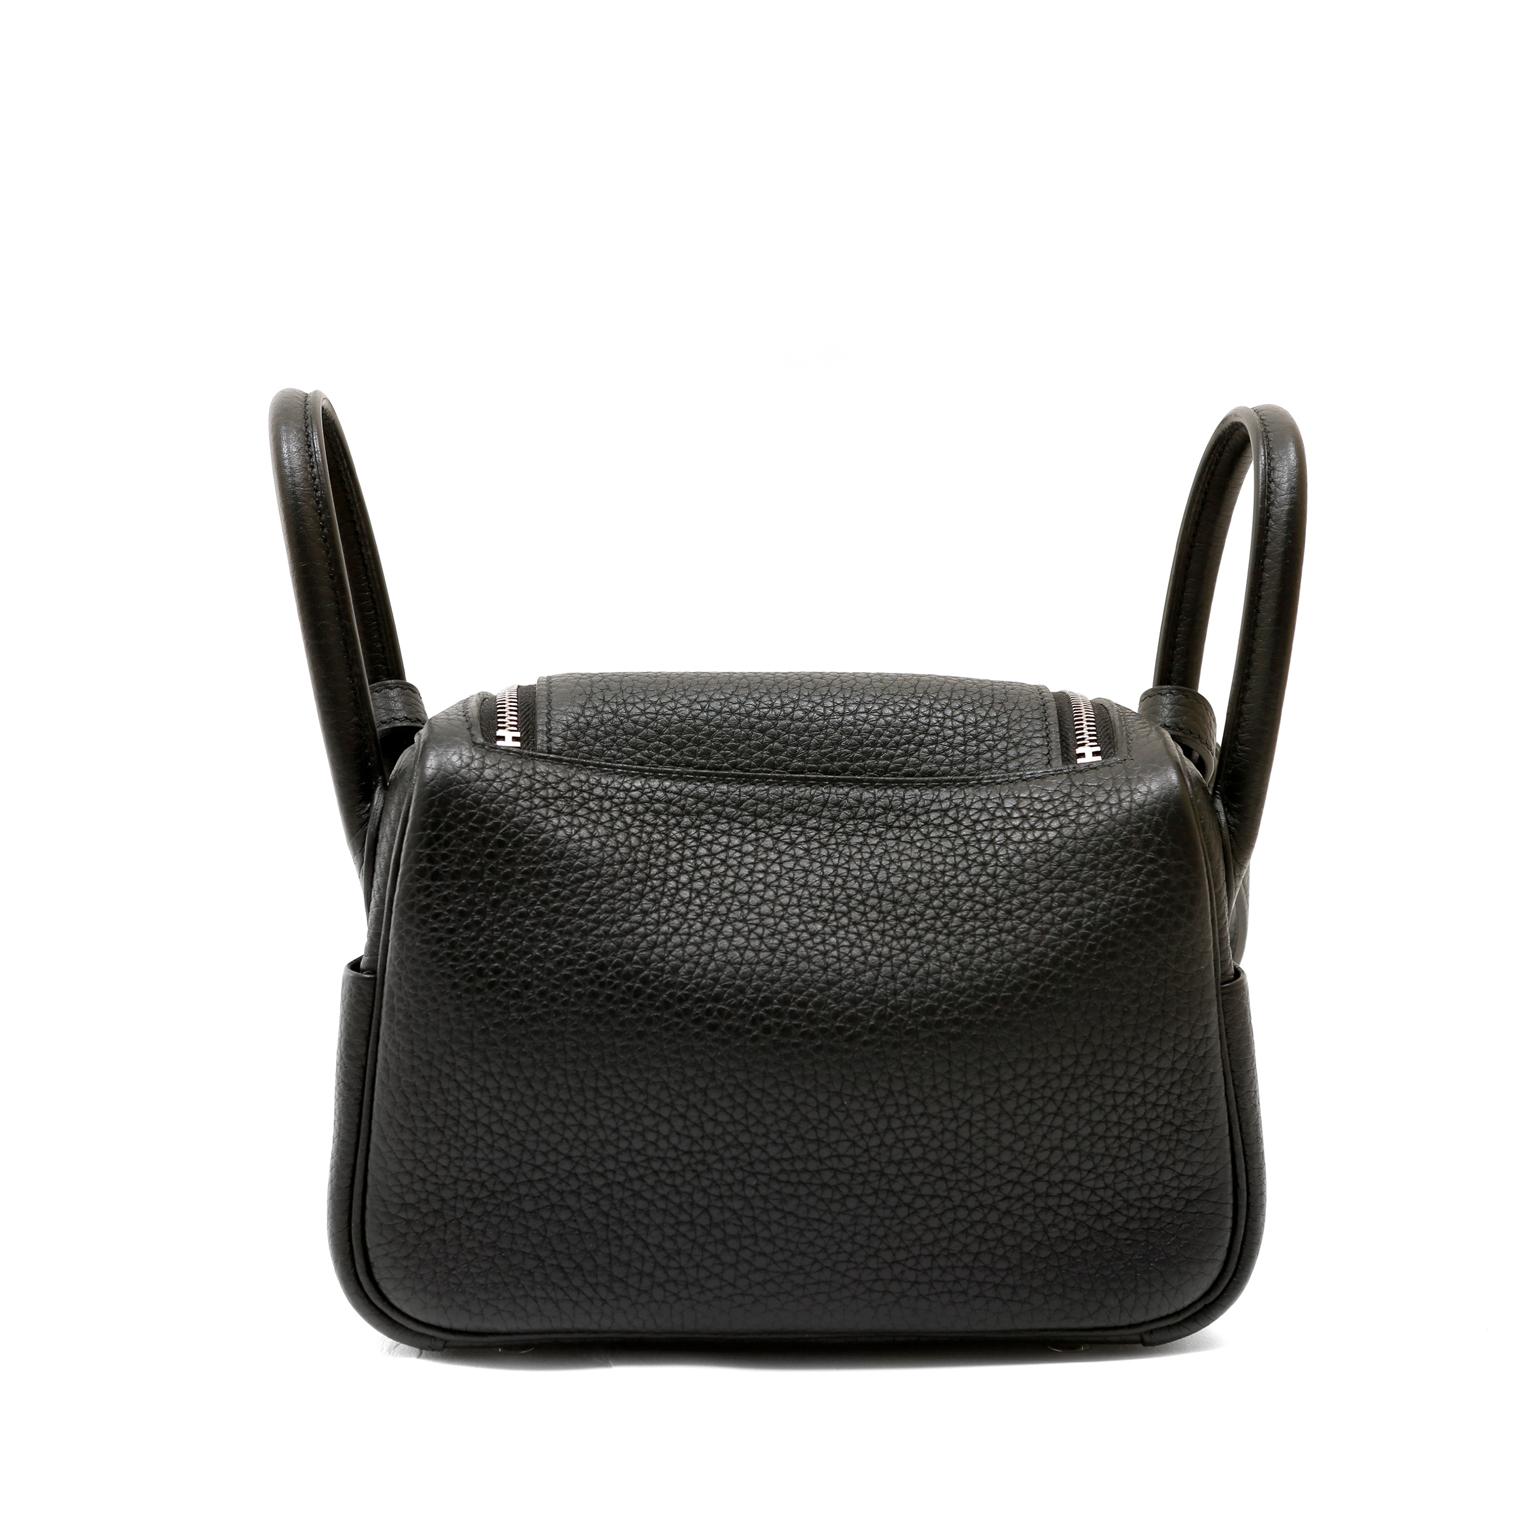 Diese authentische Hermès Black Clemence Mini Lindy ist nagelneu mit dem schützenden Kunststoff auf die Hardware.  Der Mini Lindy ist ein sehr gefragter Klassiker aus schwarzem Leder mit Palladiumbeschlägen. 
Die Lindy hat zwei Henkel und einen